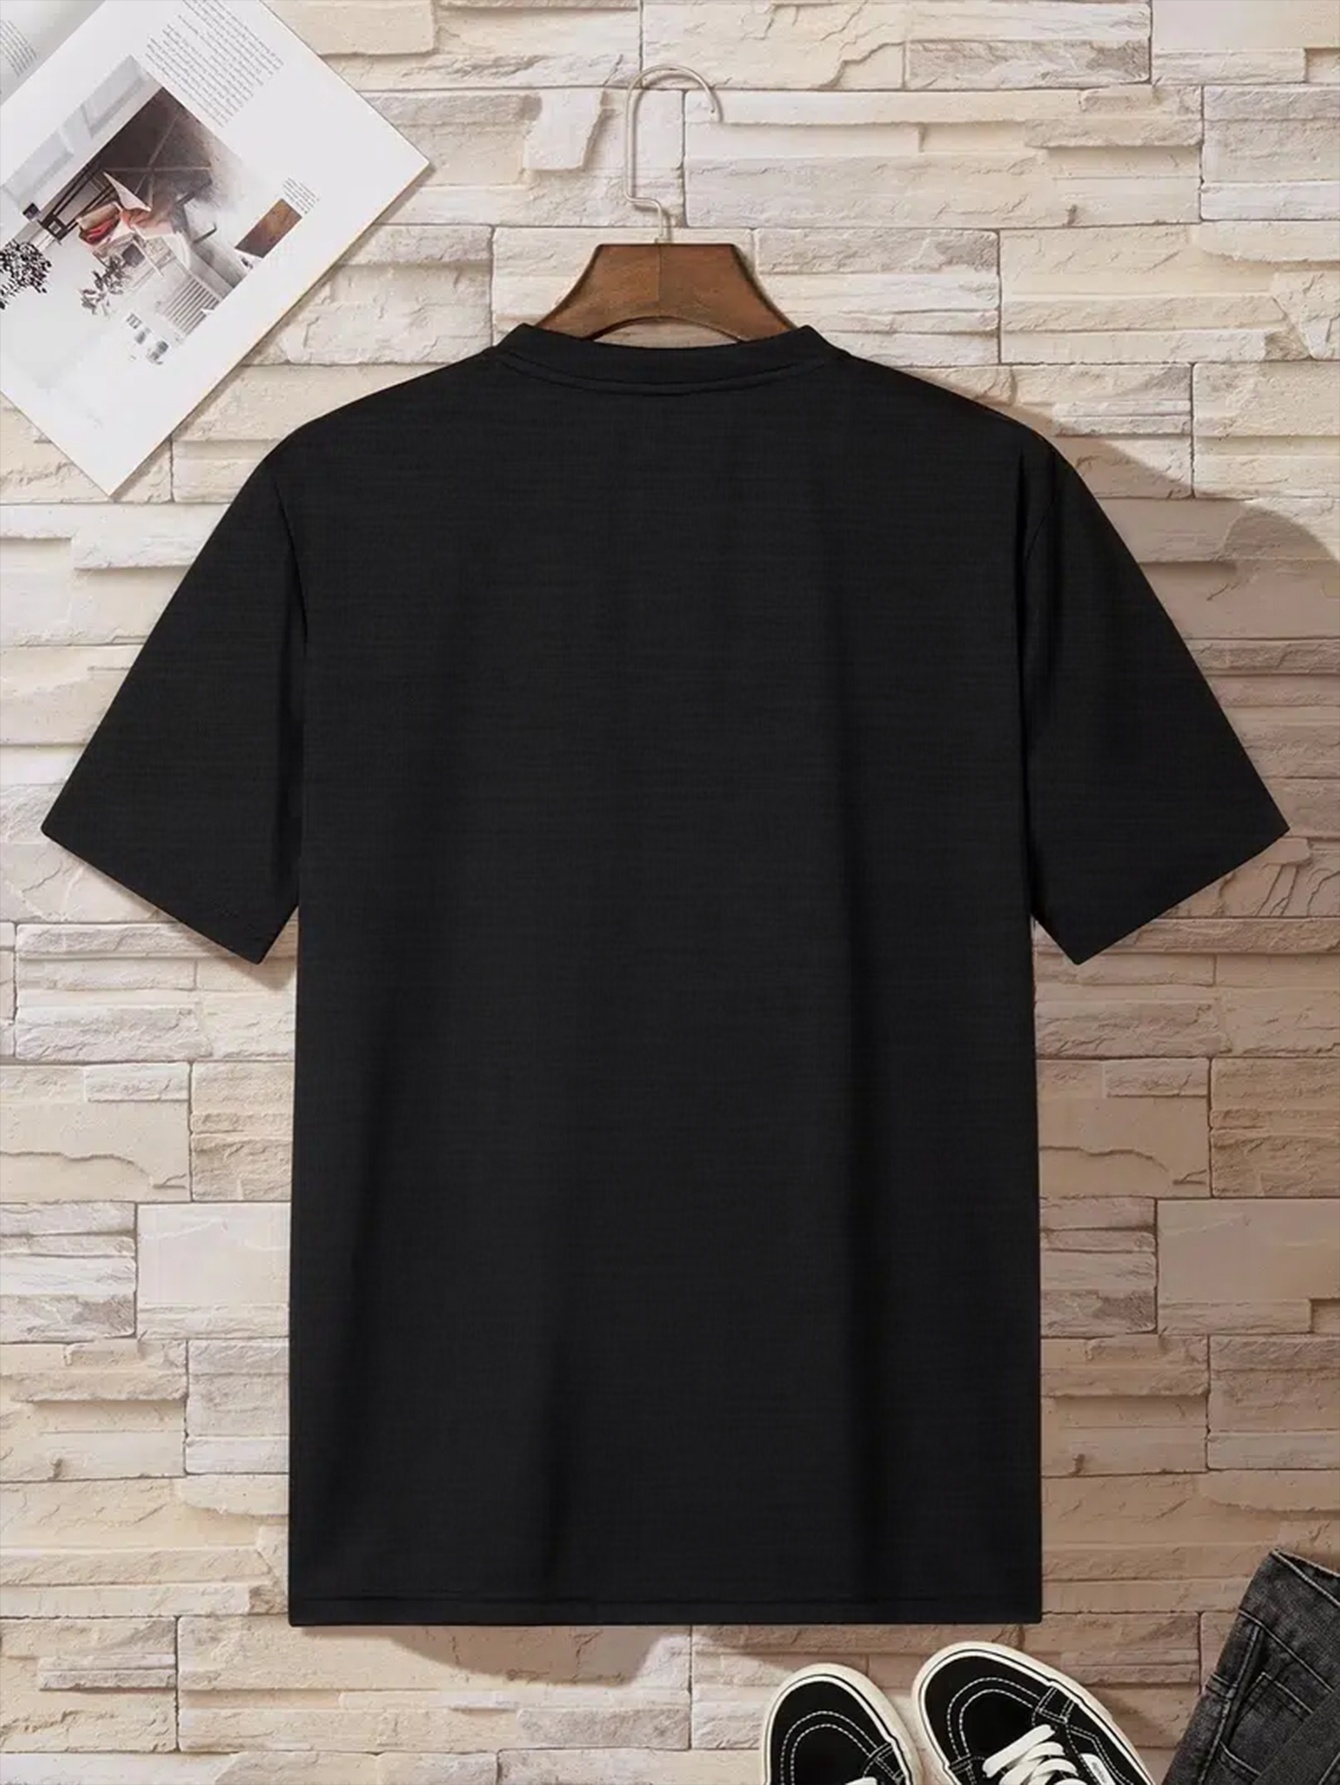 Camisetas negras para hombre Camiseta informal informal de manga